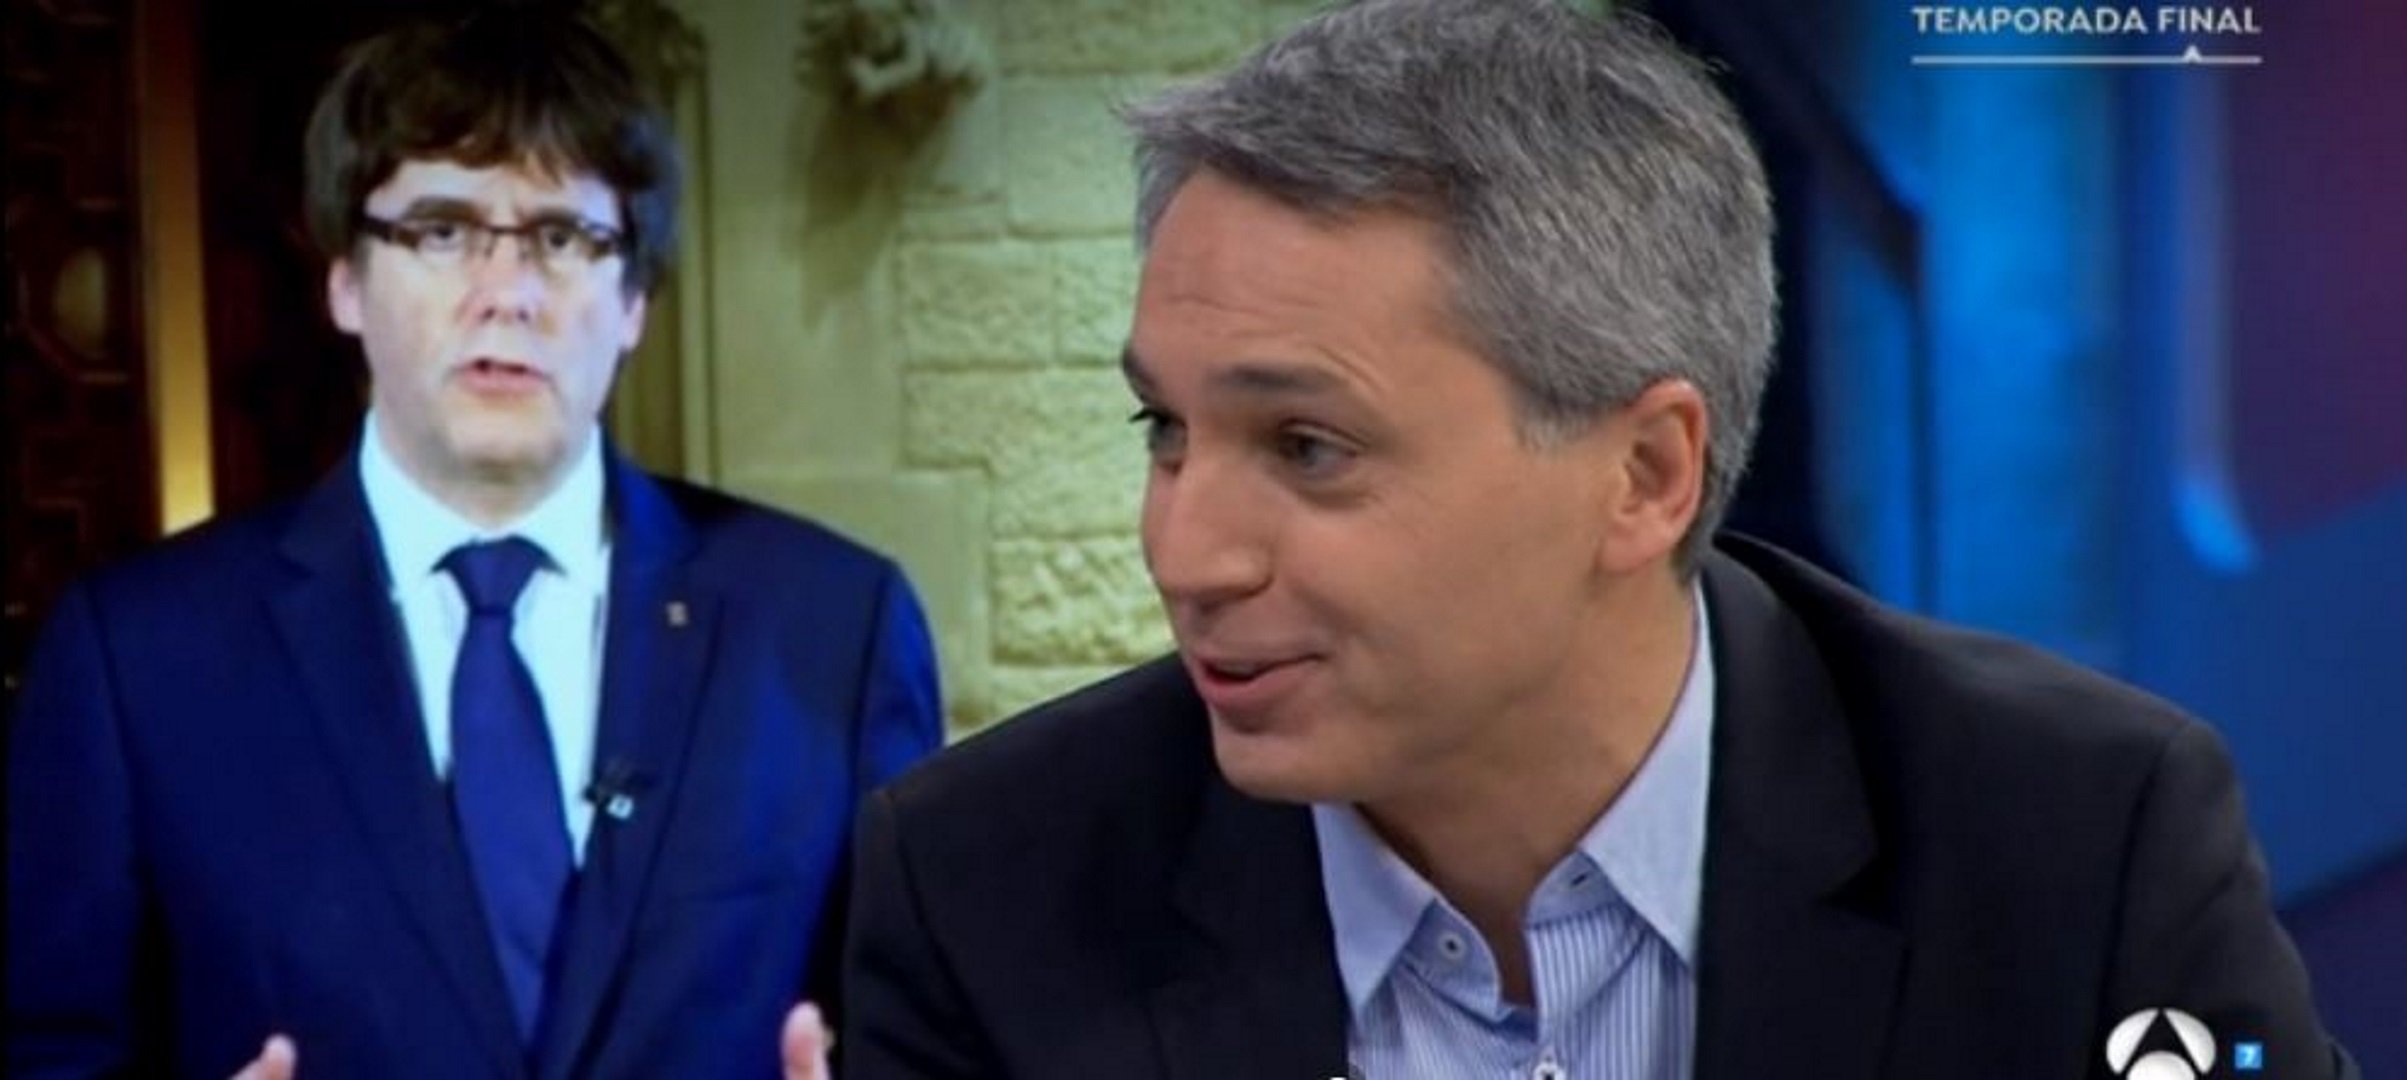 Vicente Vallés (Antena 3): “La intervenció a un mitjà és una cosa que sona molt lletja”